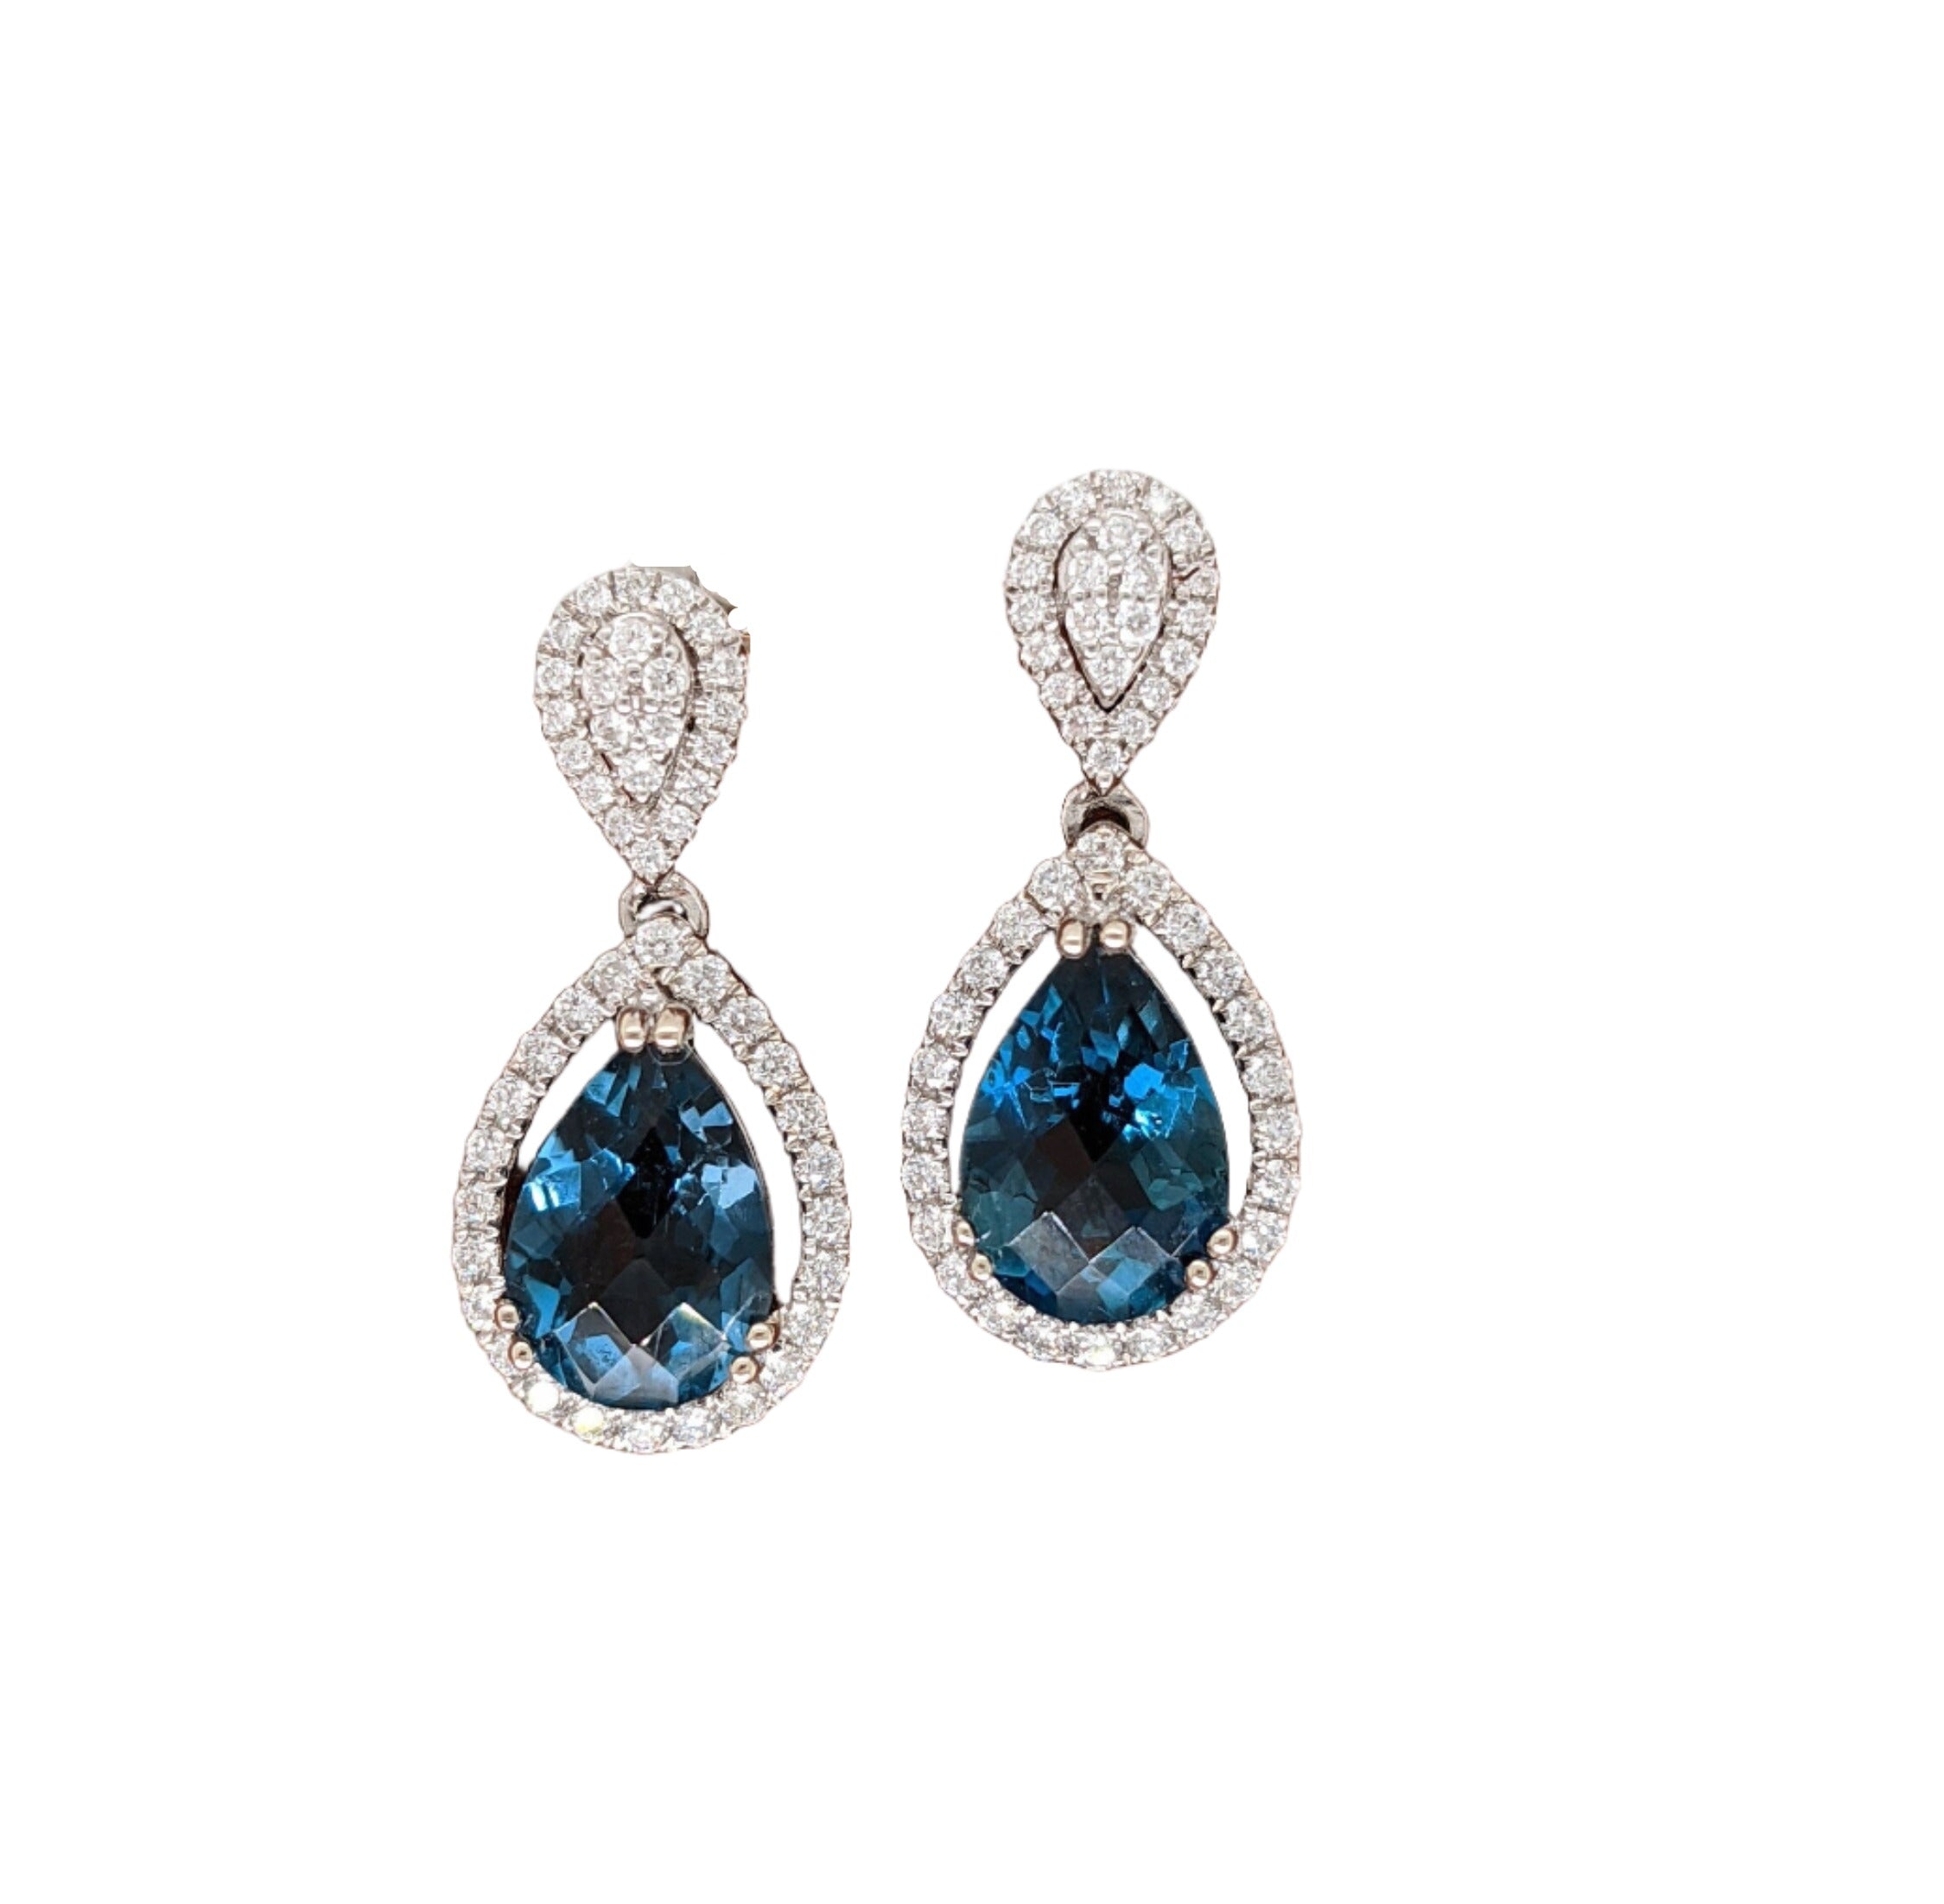 Stunning London Blue Topaz Dangle Earrings in Solid 14k White Gold | Pear Shape 8x6mm | Push Back | Blue Gemstone Earrings | LBT | Custom